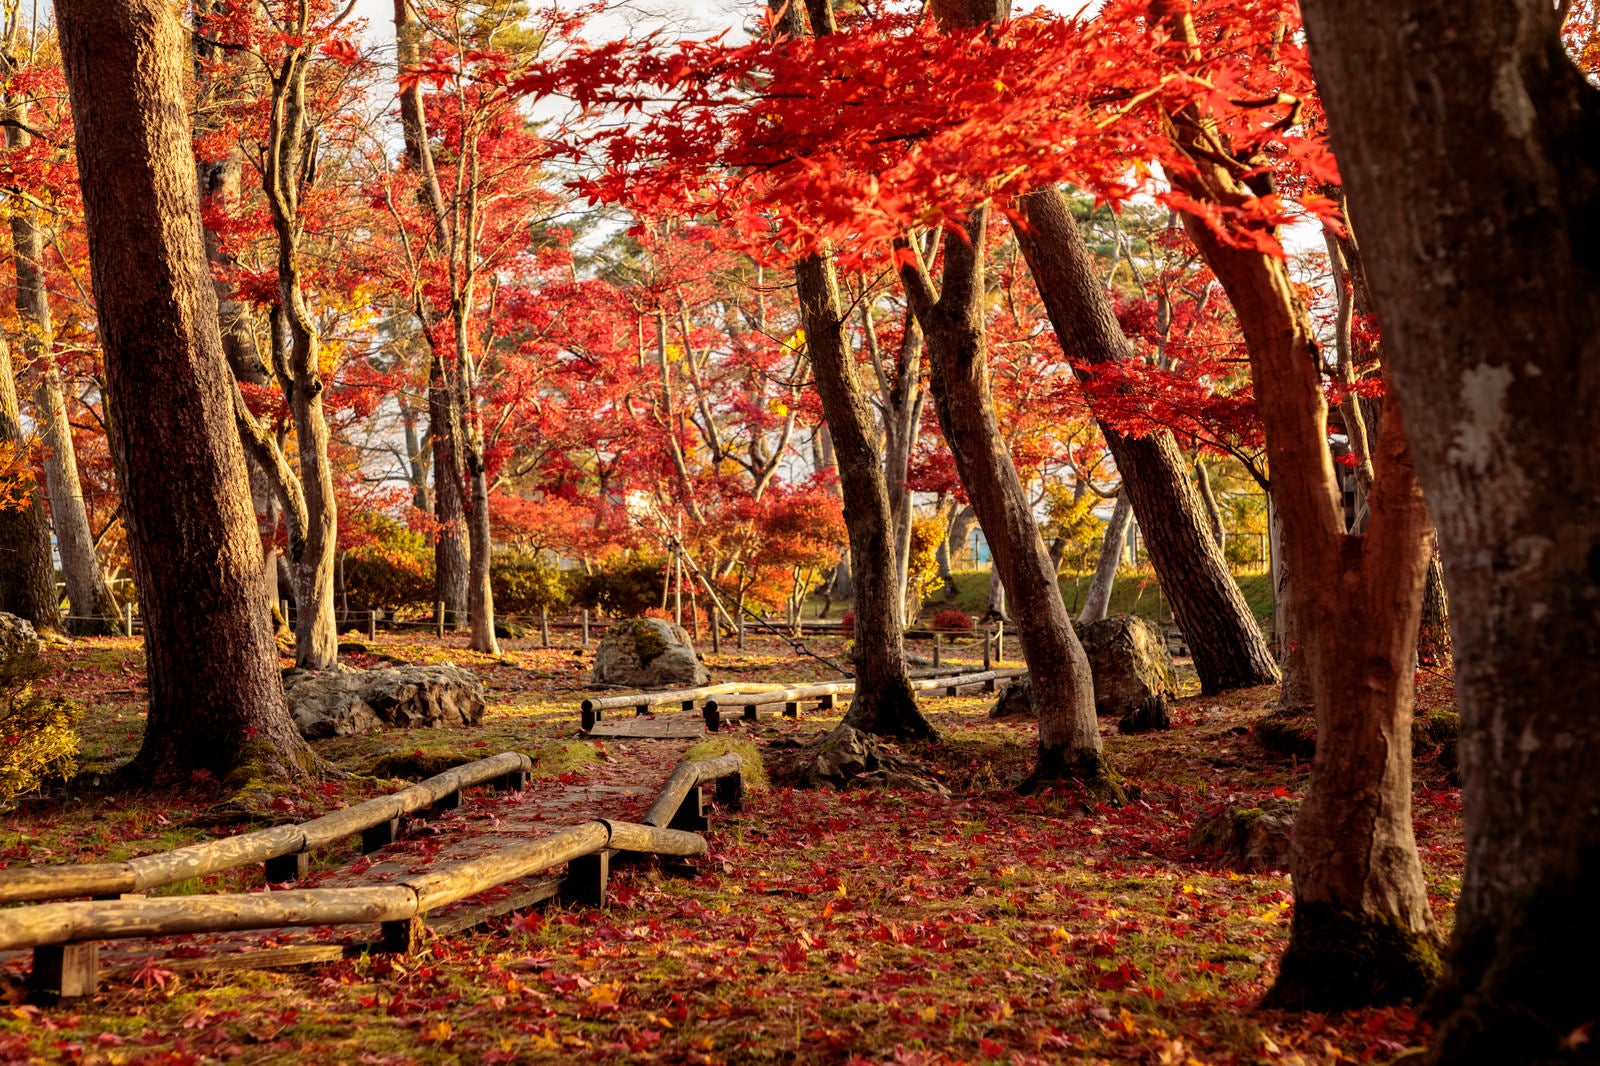 「紅葉した木々と木道に散るもみじ」の写真